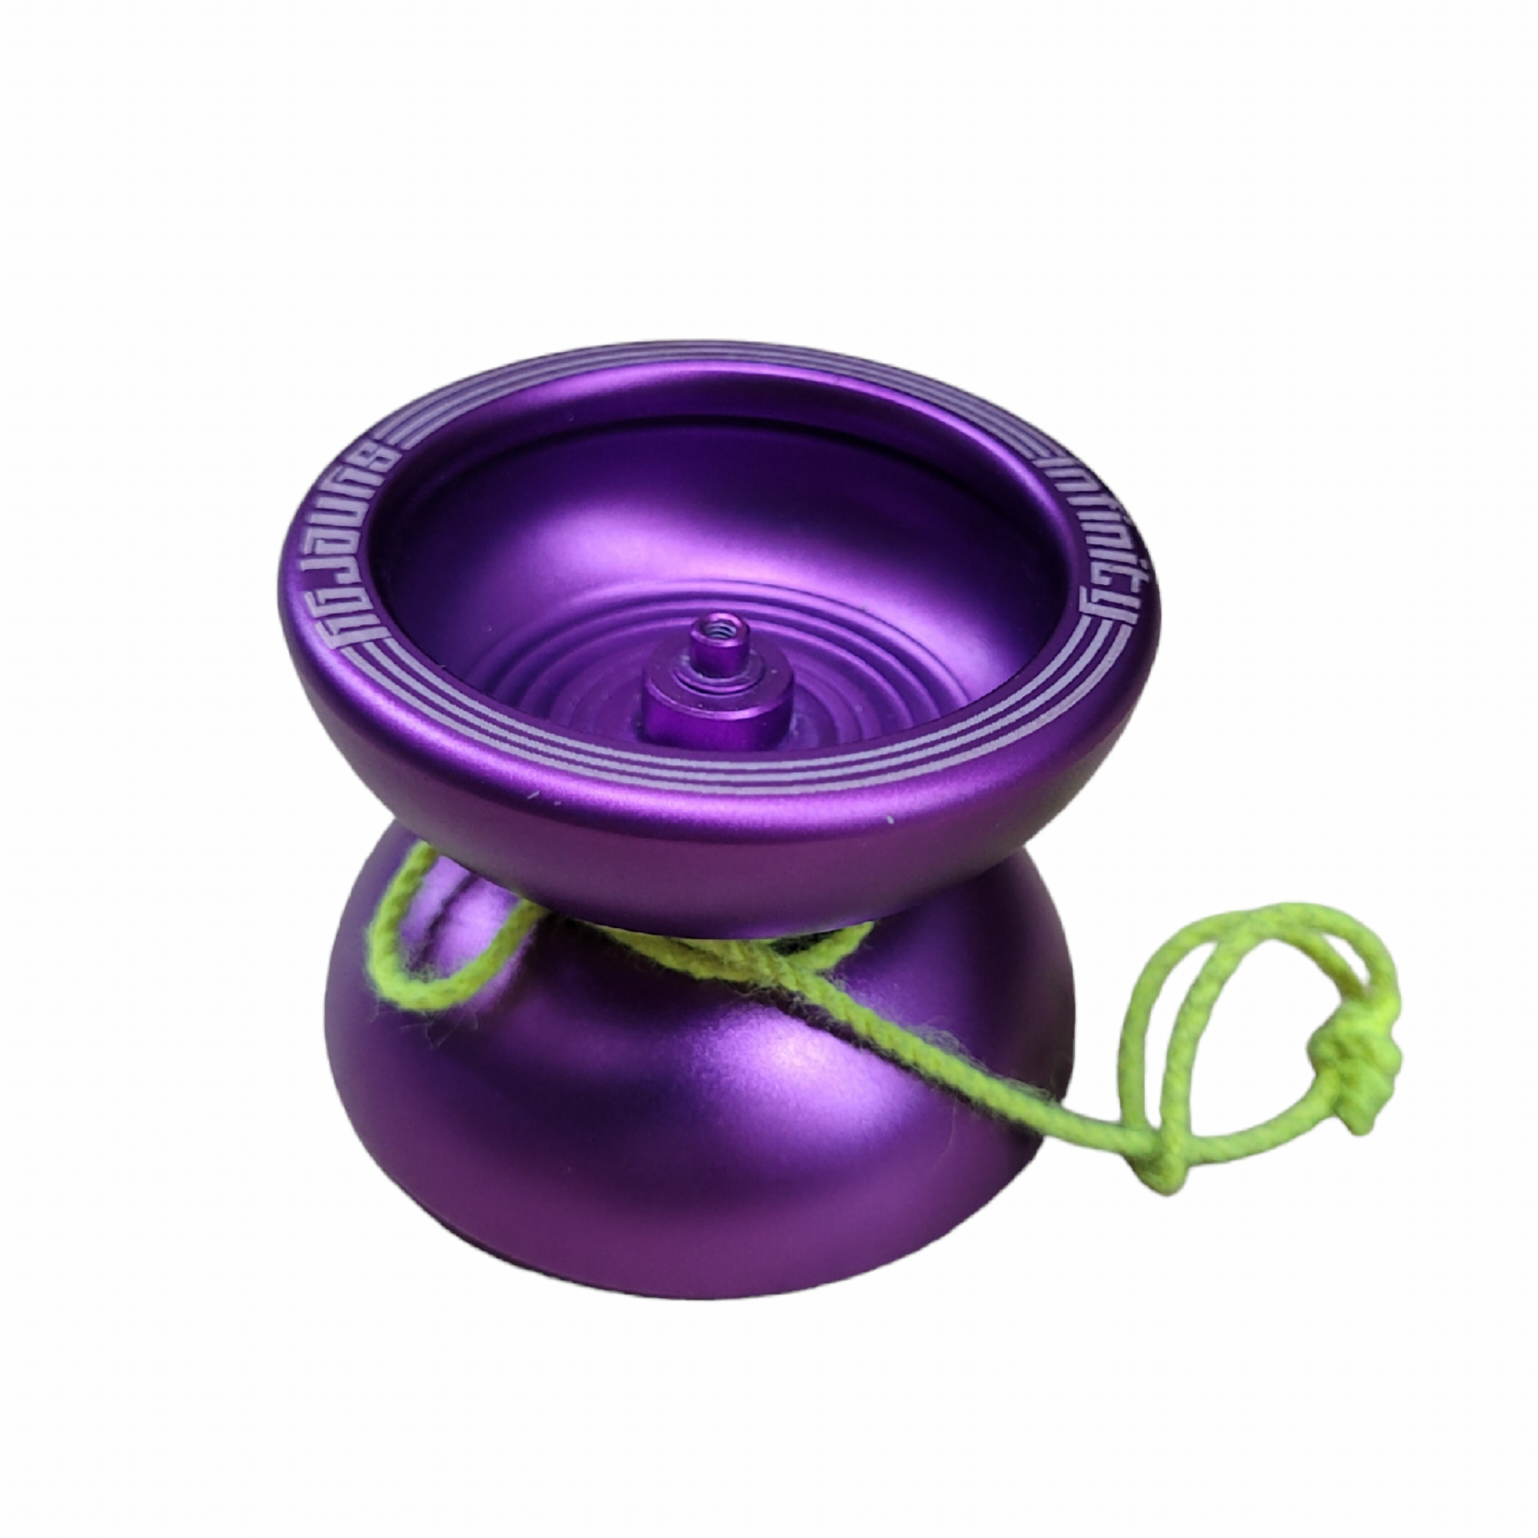 Infinity Synergy Yoyo - Purple - Bargain basement